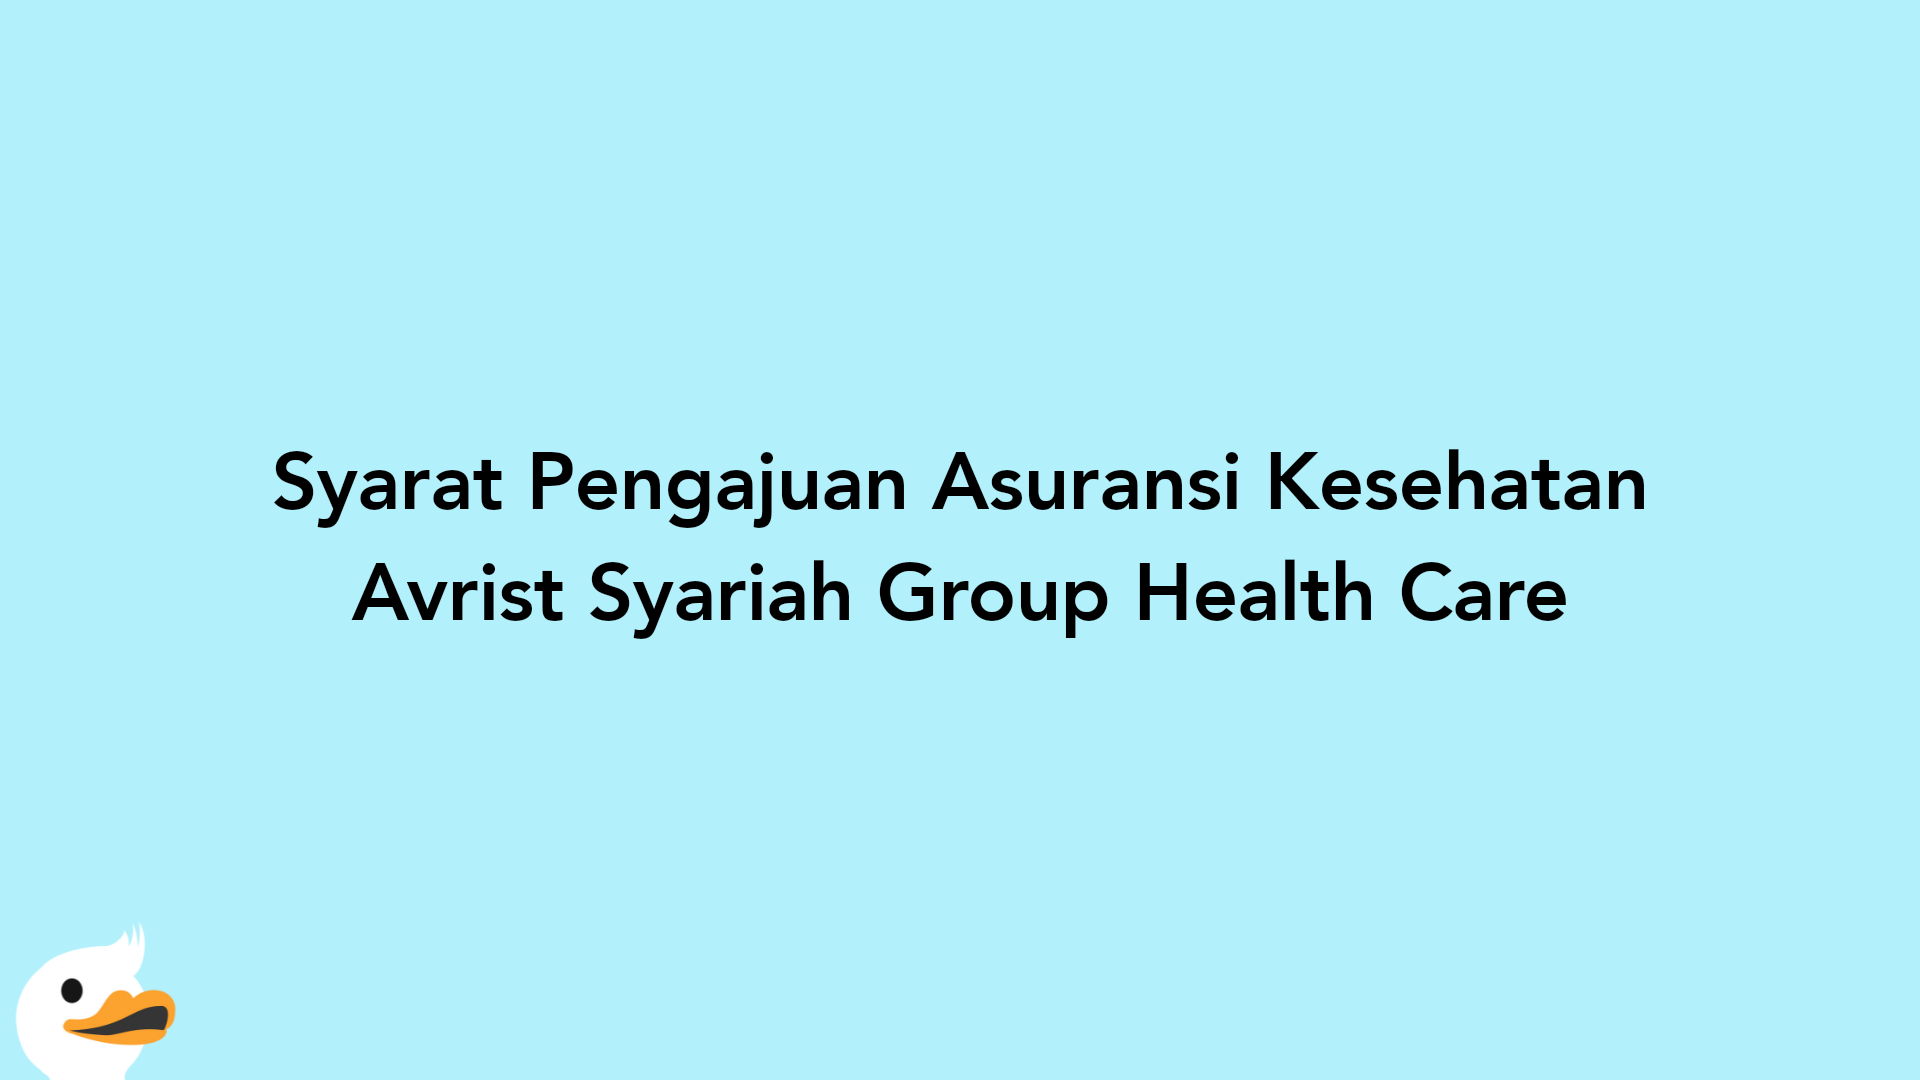 Syarat Pengajuan Asuransi Kesehatan Avrist Syariah Group Health Care